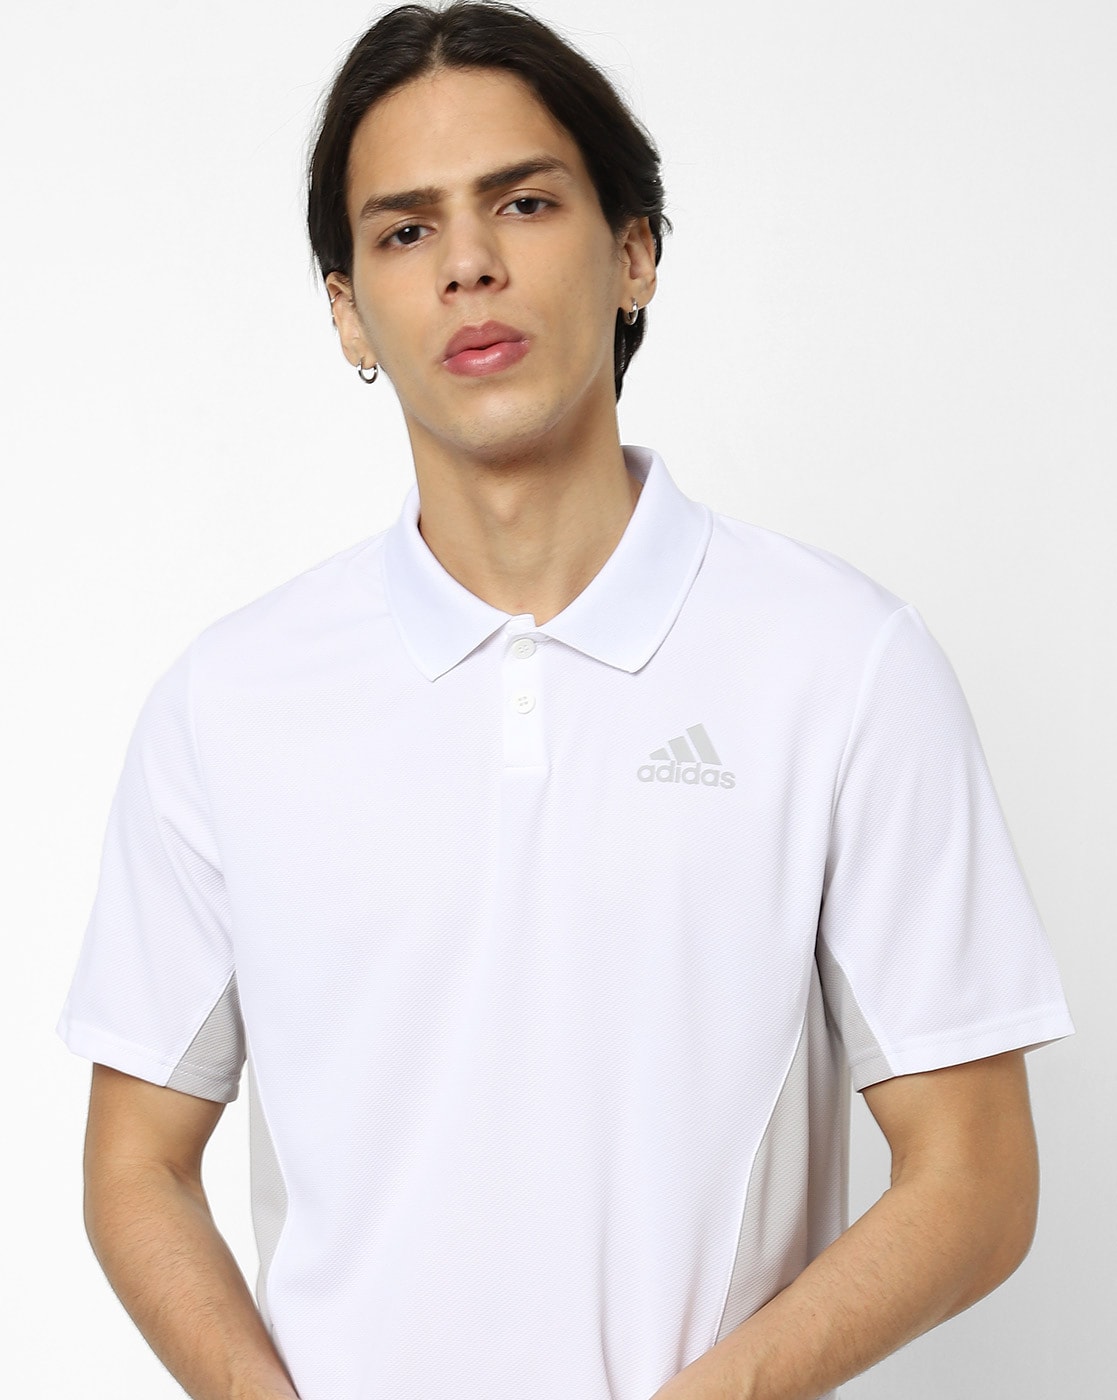 trog Beweren Decoderen Buy White Tshirts for Men by ADIDAS Online | Ajio.com